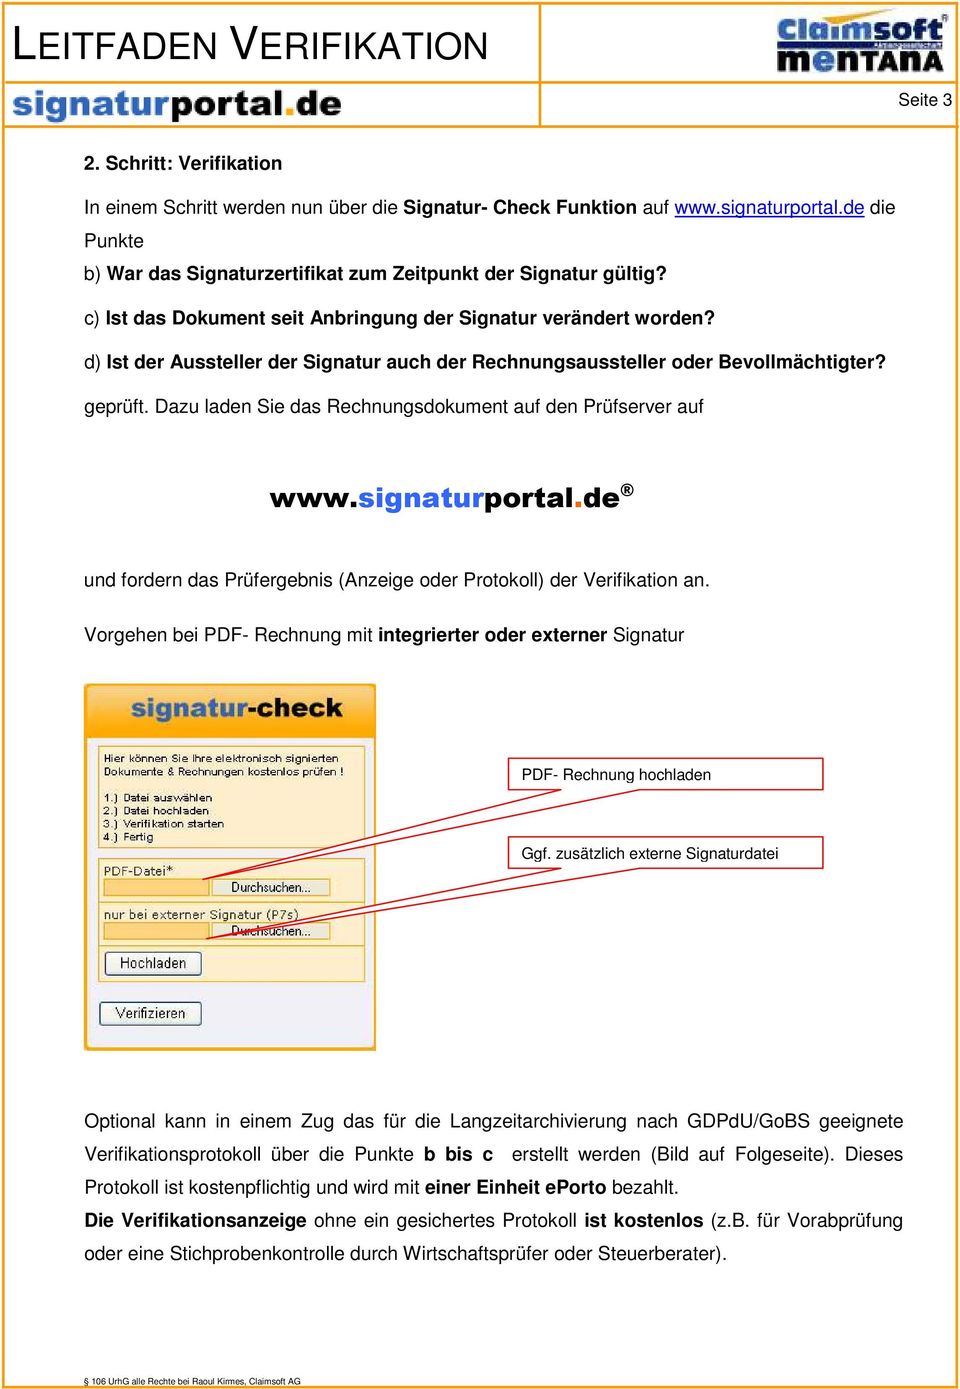 Dazu laden Sie das Rechnungsdokument auf den Prüfserver auf www.signaturportal.de und fordern das Prüfergebnis (Anzeige oder Protokoll) der Verifikation an.